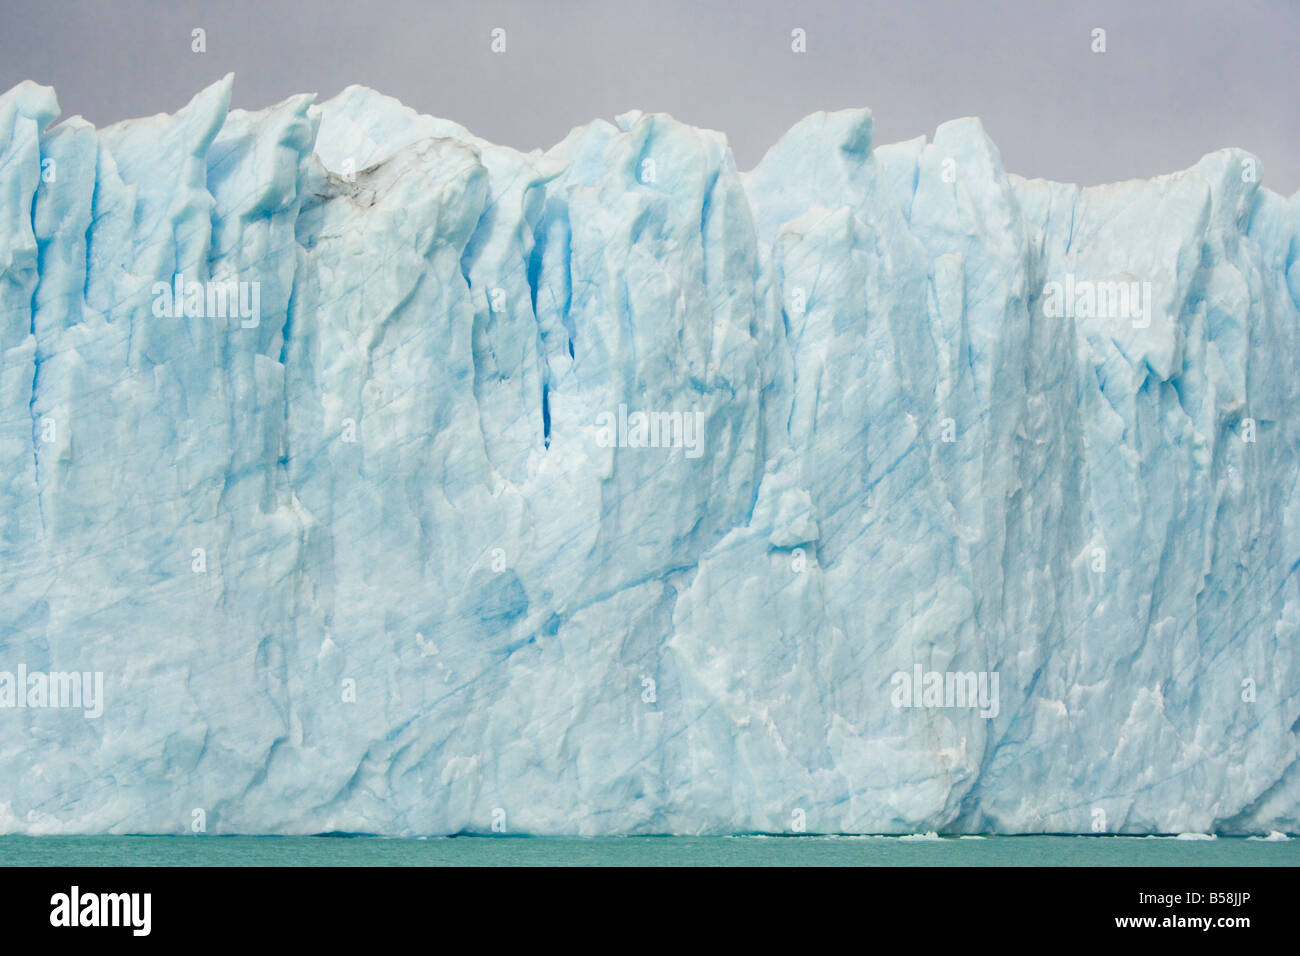 Close up of Perito Moreno Glacier, Parque Nacional Los Glaciares, Patagonia, Argentina, South America Stock Photo